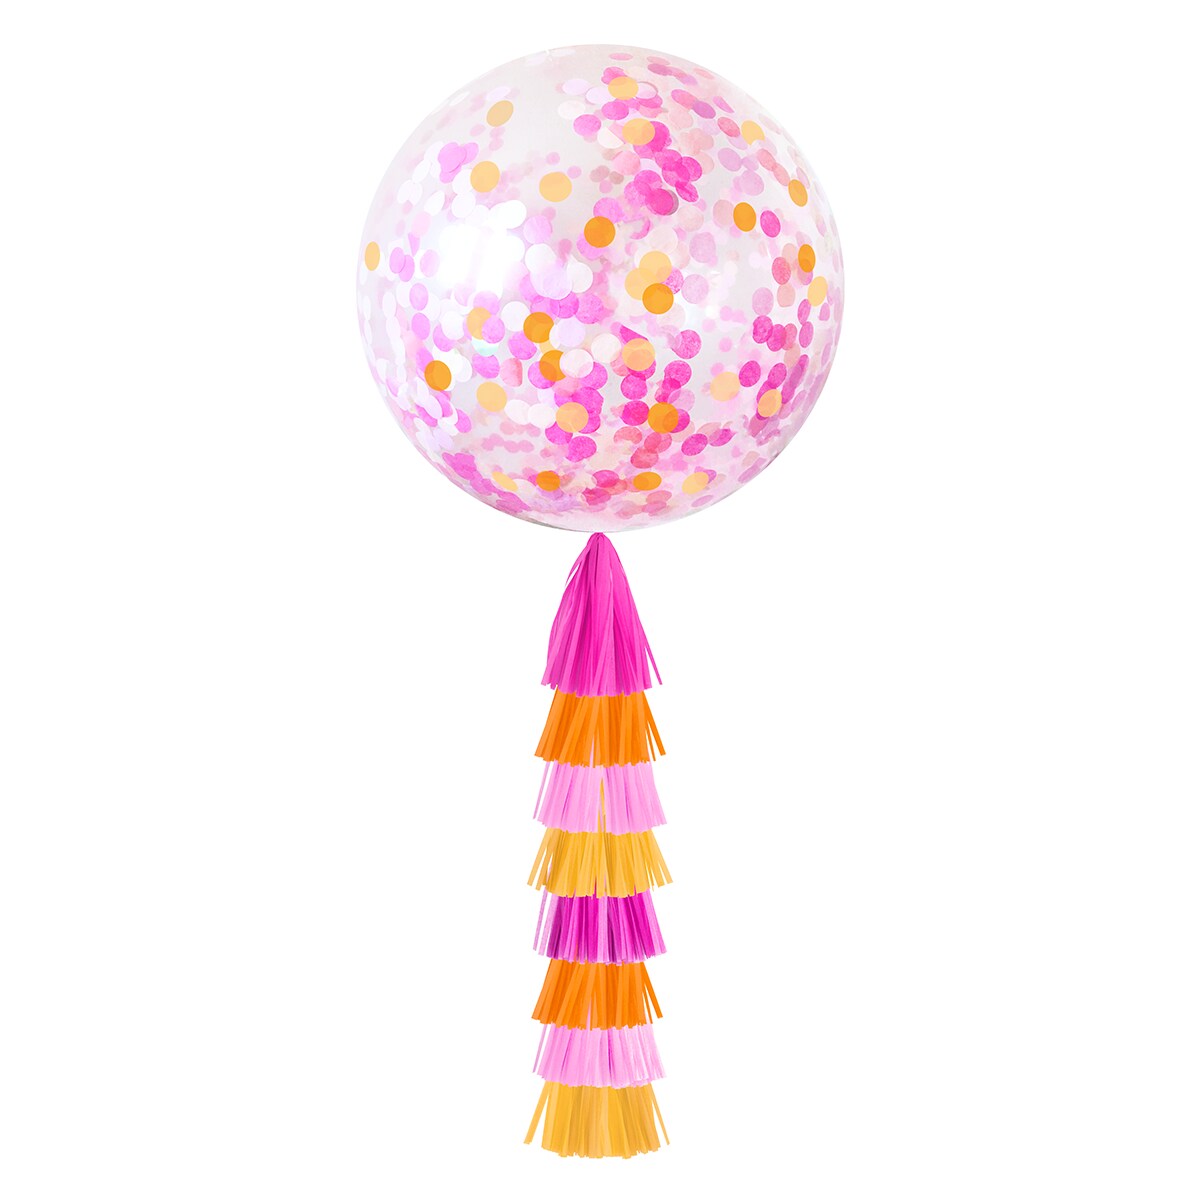 Jumbo Confetti Balloon &#x26; Tassel Tail - Pink Grapefruit (Pink &#x26; Orange)